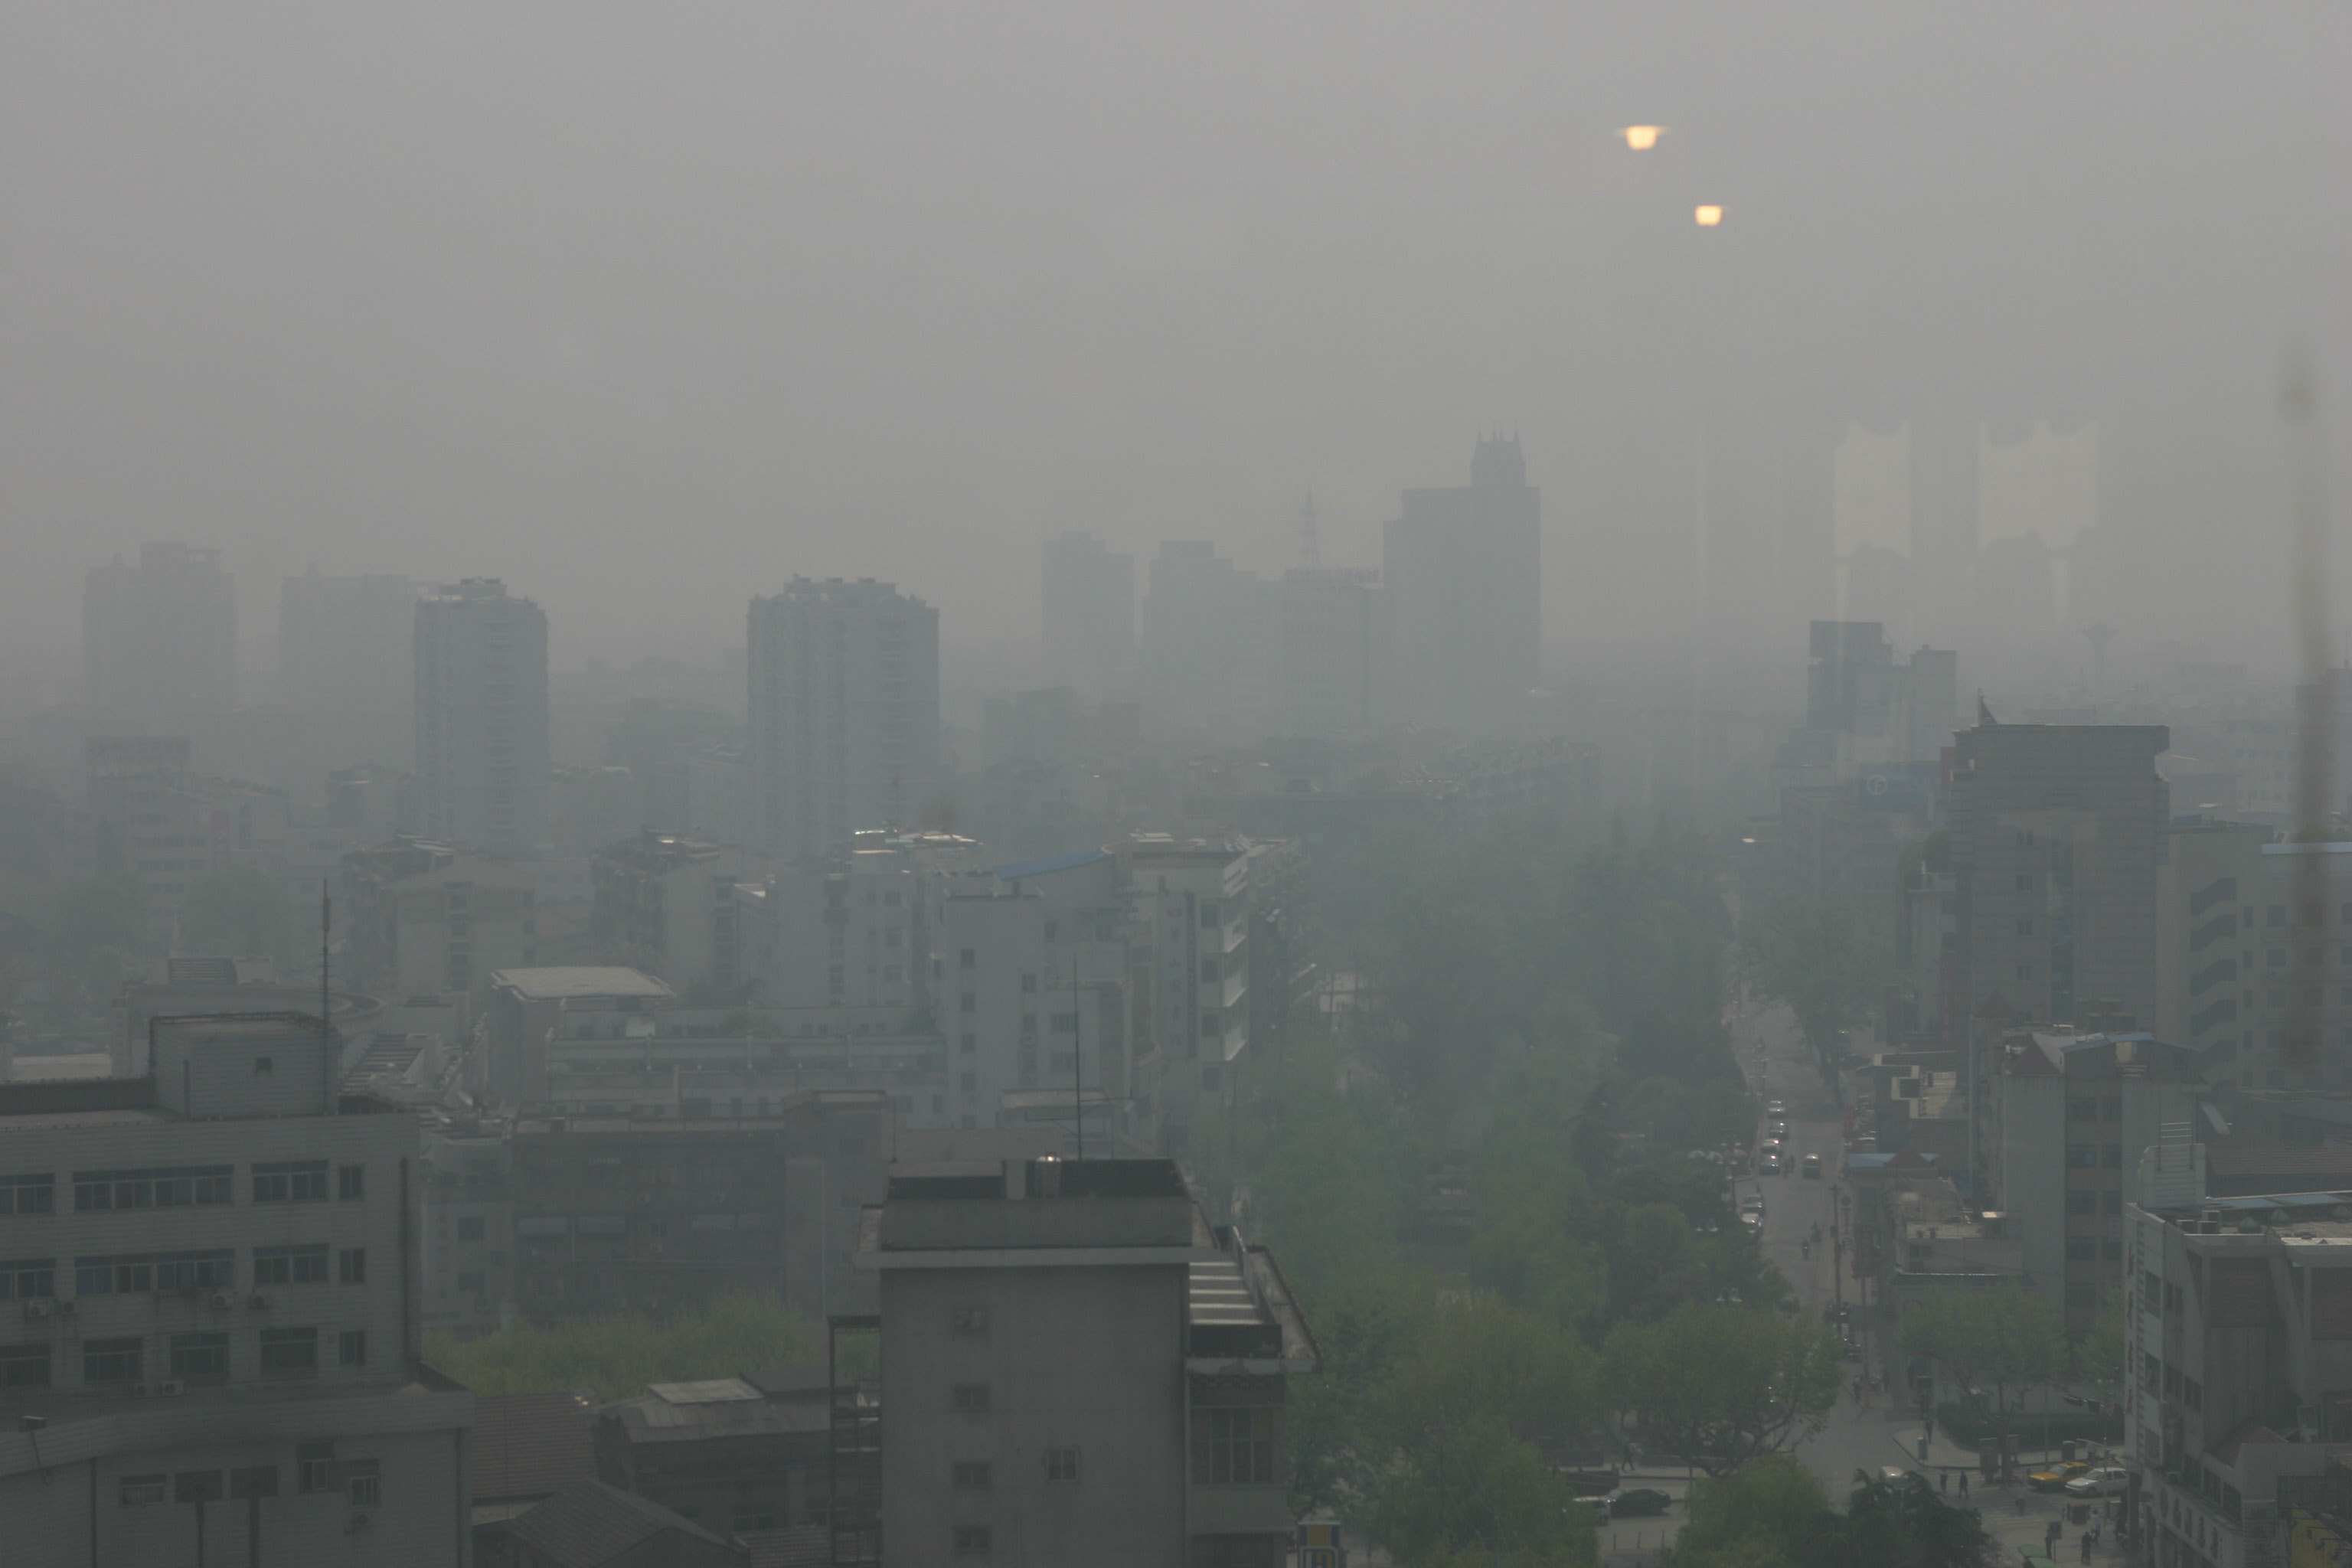 La contaminación del aire: el smog – Blog sobre medio ambiente y ecología